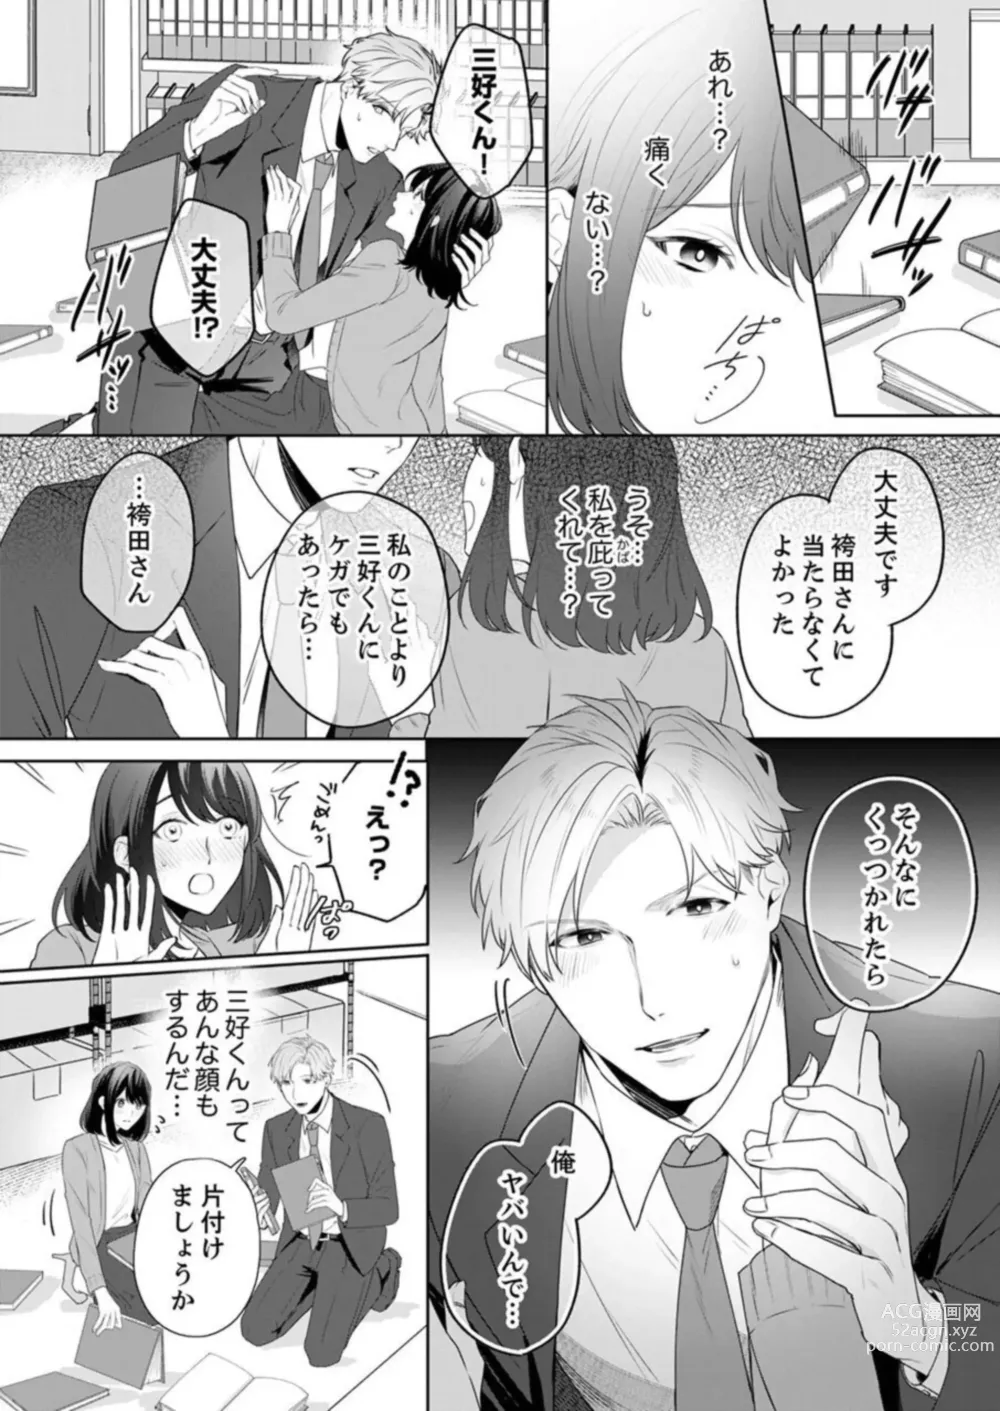 Page 10 of manga Oshi ni no Buka no Koshikudake Kisu 〜 Desuku no ue de Torotoro ni Nurete 1-2